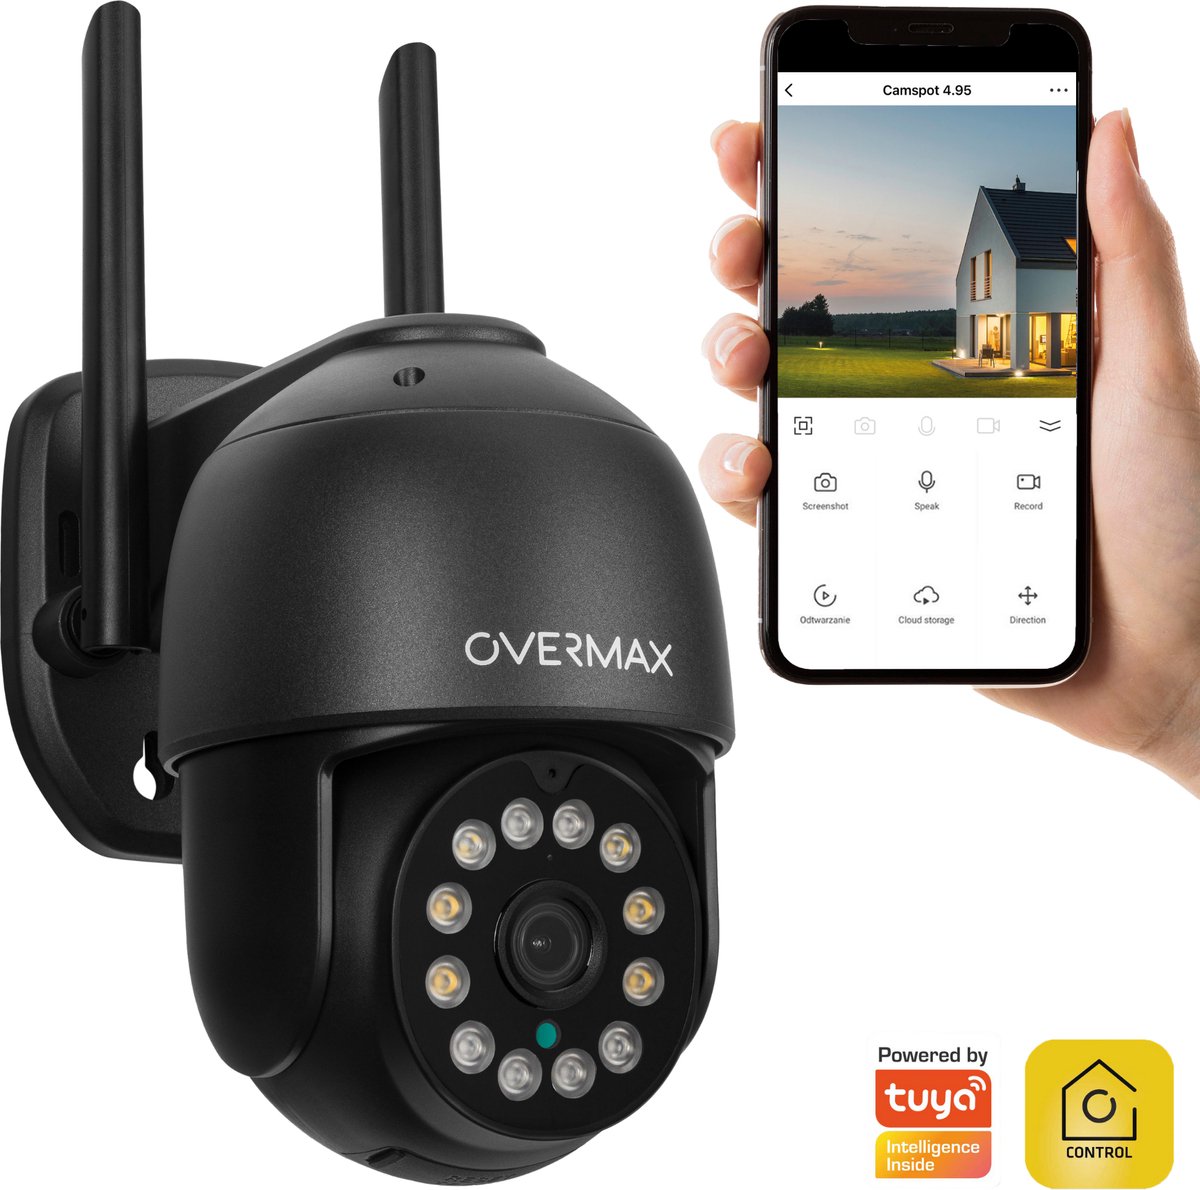 Overmax Camspot 4.95 - SMART Beveiligingscamera voor buiten - Intelligente bewegingsdetectie - Nachtmodus tot 60m - Alarm - iOS / Android APP - IP66 - PoE tot 100m